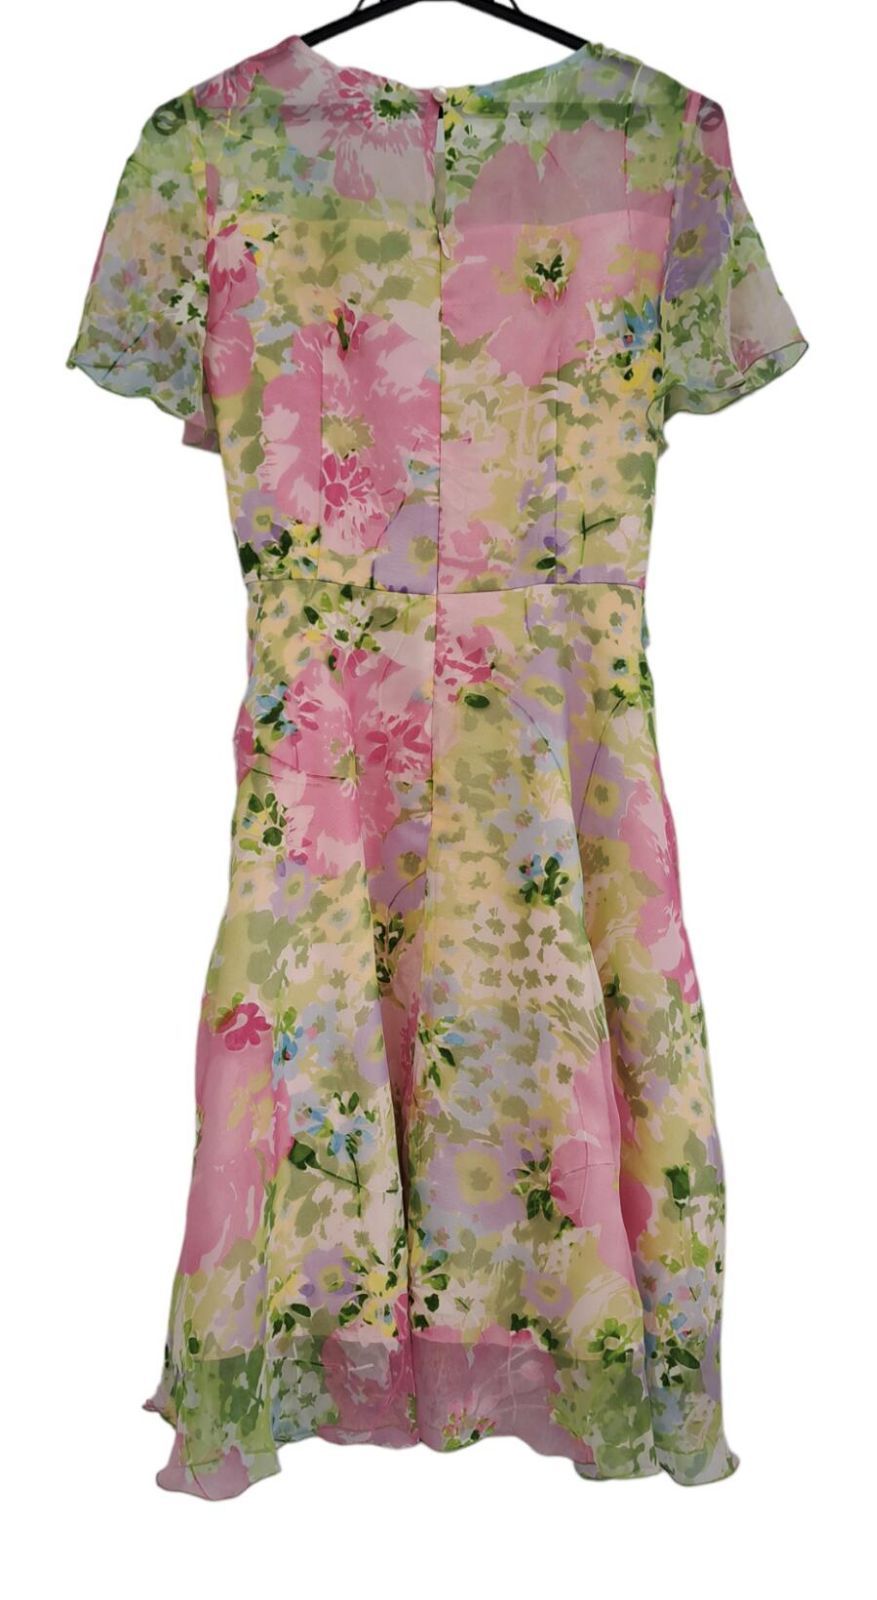 エムズグレイシー ワンピース 花柄 ピンク シフォン ドレス 38